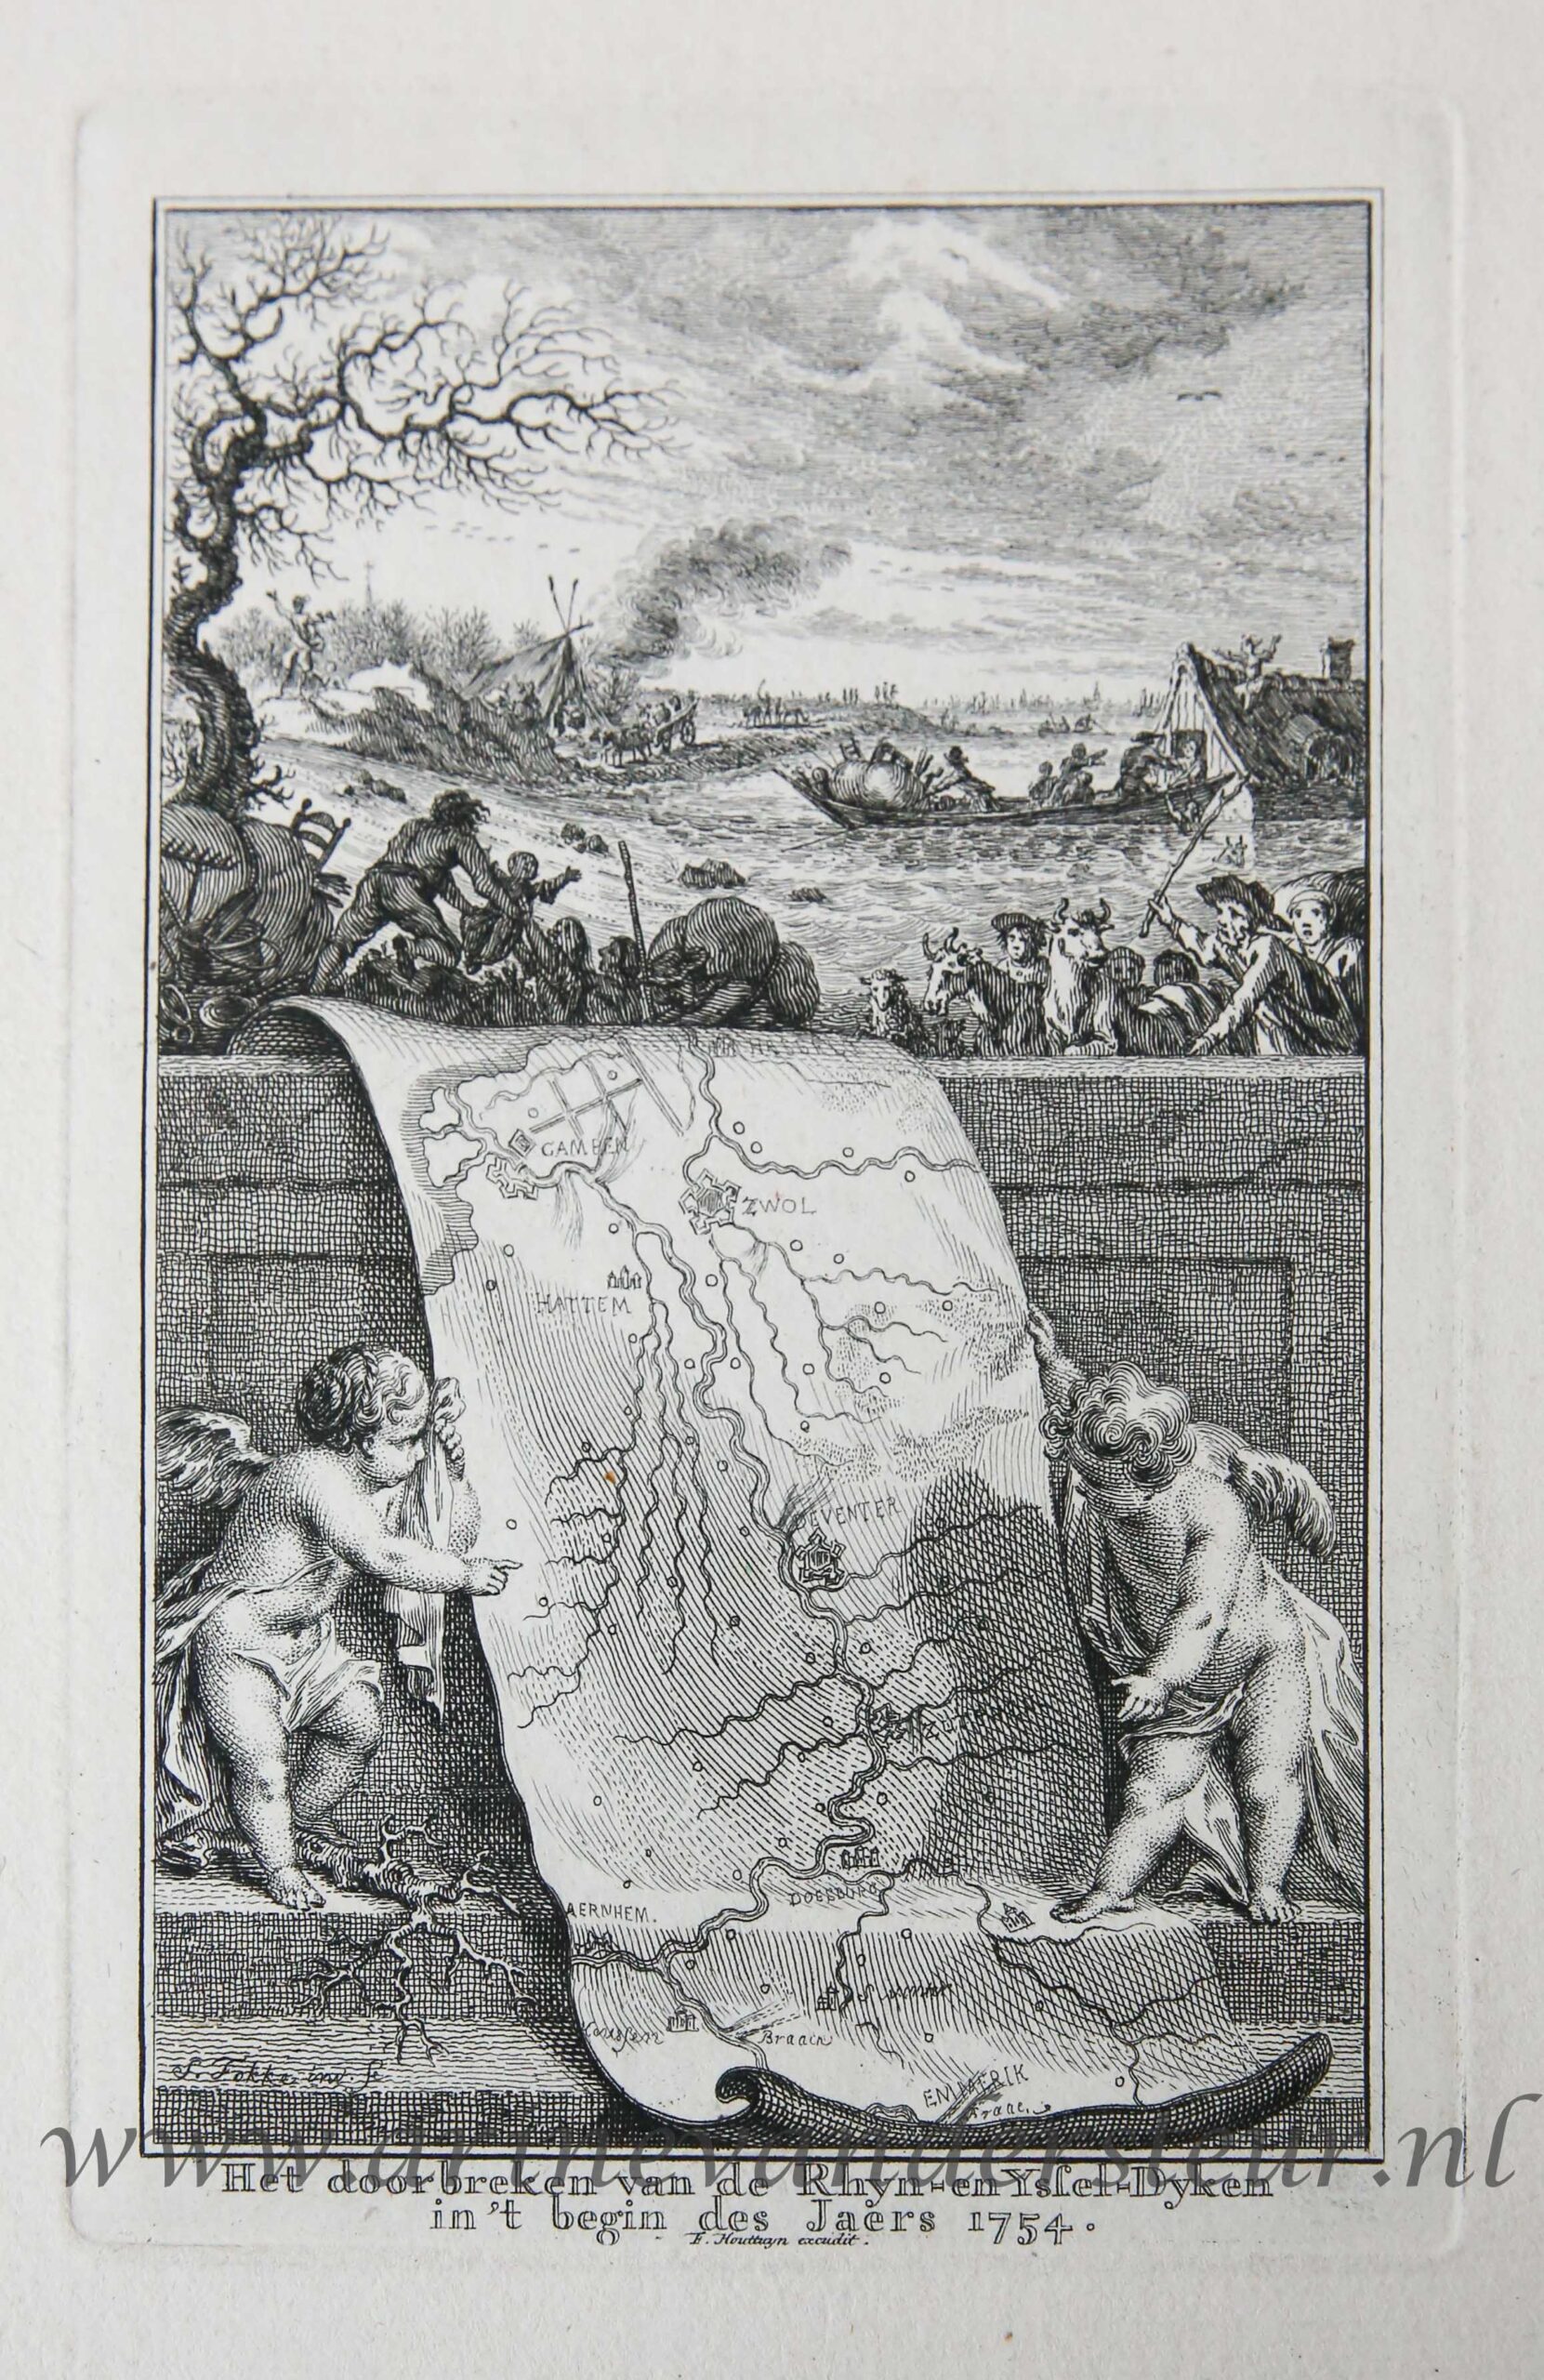 [Book illustration, 1754] Het doorbreken van de Rhyn- en Yssel-Dyken in't begin des Jaers 1754 , published 1754, 1 p.